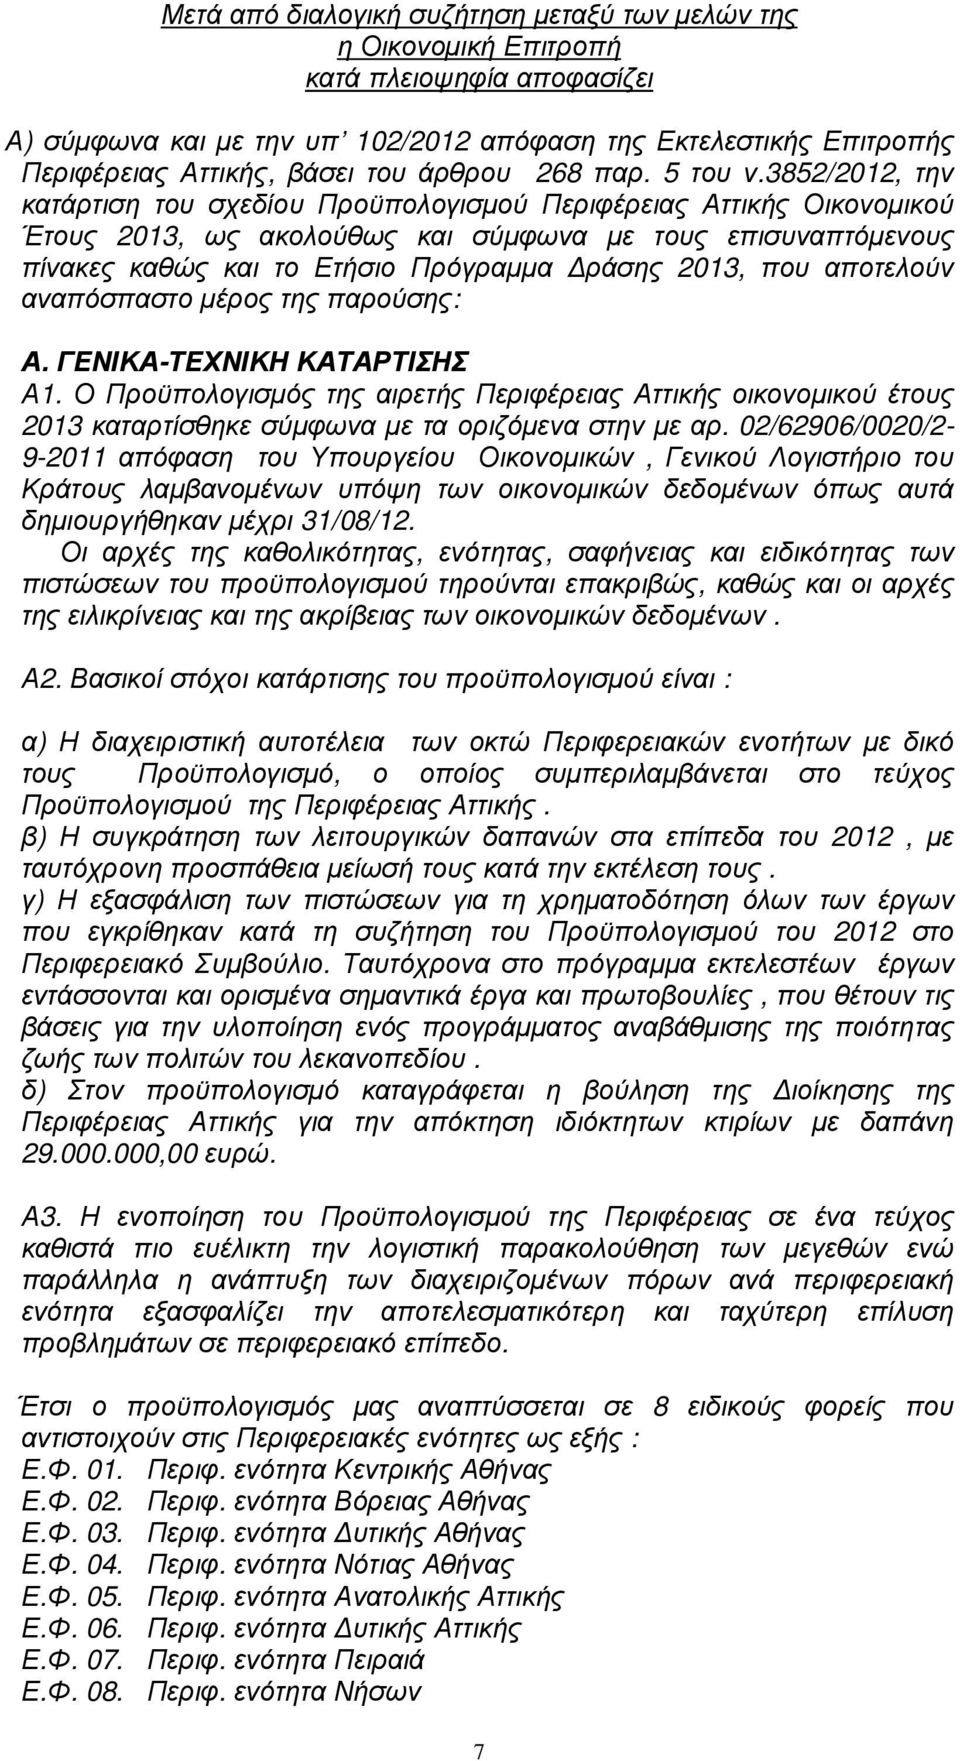 3852/2012, την κατάρτιση του σχεδίου Προϋπολογισµού Περιφέρειας Αττικής Οικονοµικού Έτους, ως ακολούθως και σύµφωνα µε τους επισυναπτόµενους πίνακες καθώς και το Ετήσιο Πρόγραµµα ράσης, που αποτελούν